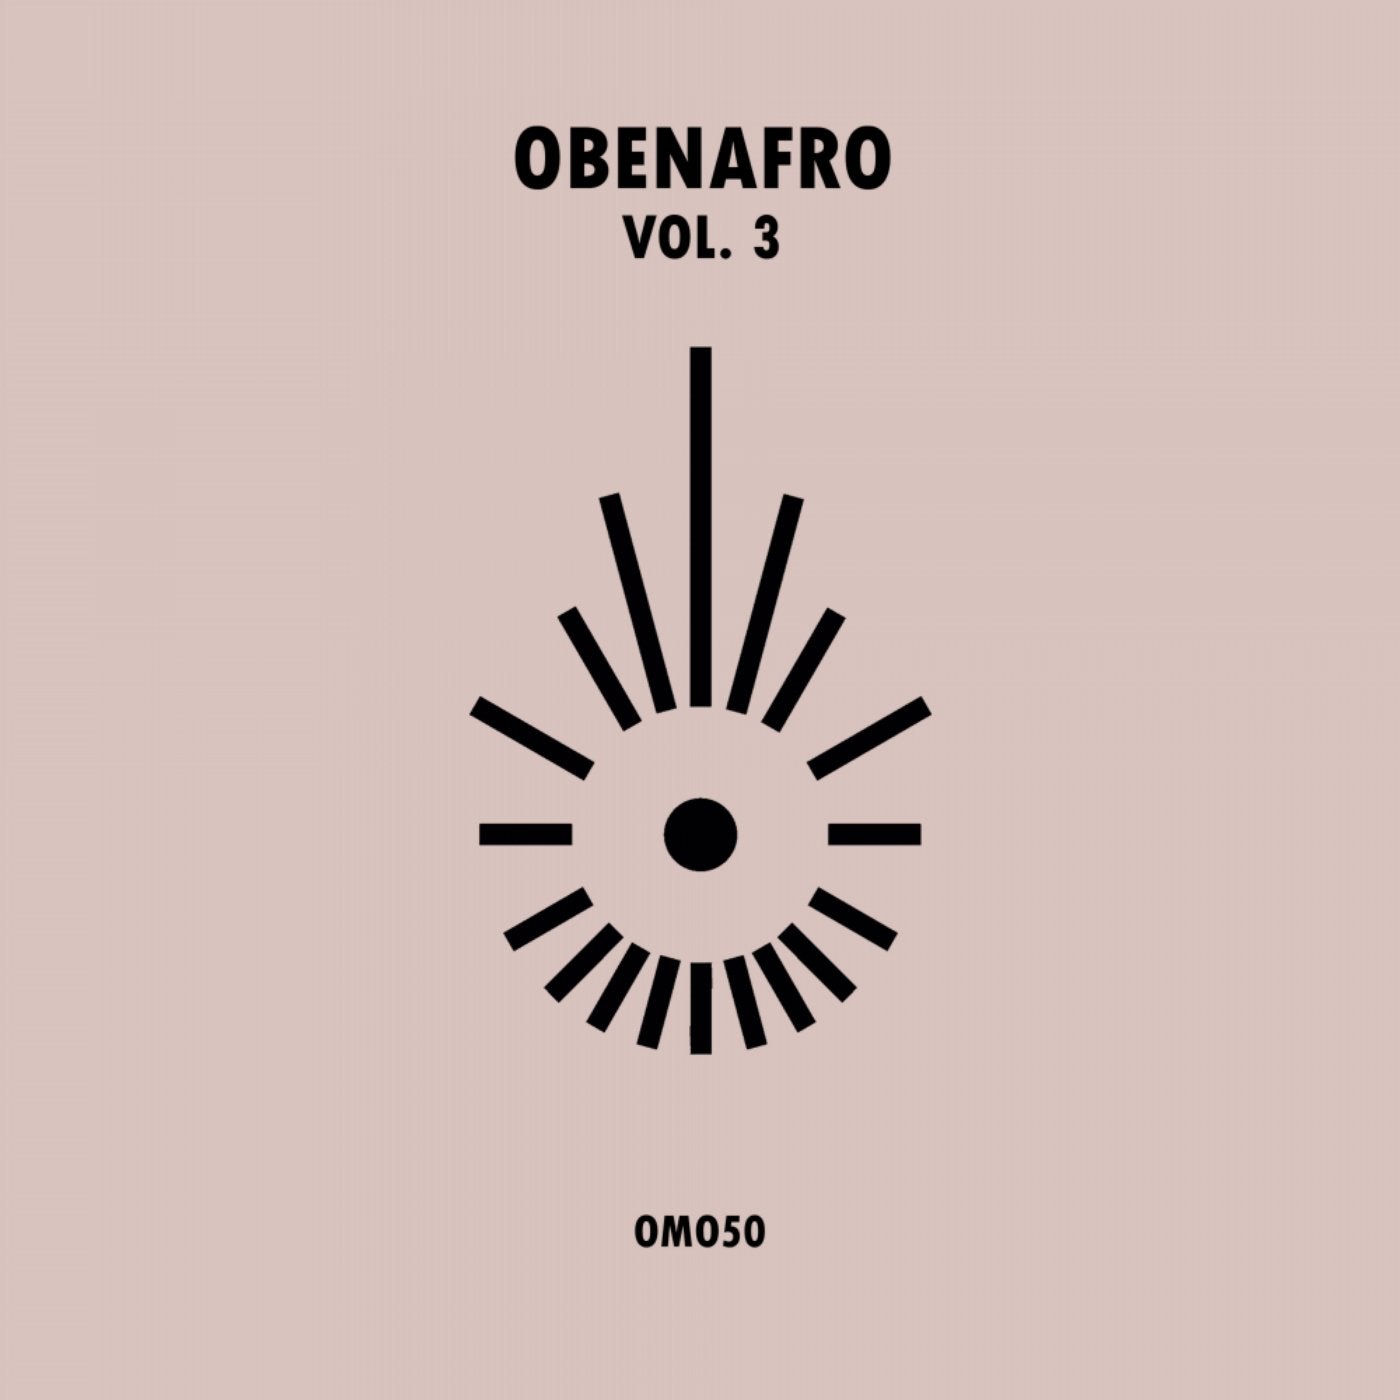 OBENAFRO, Vol. 3